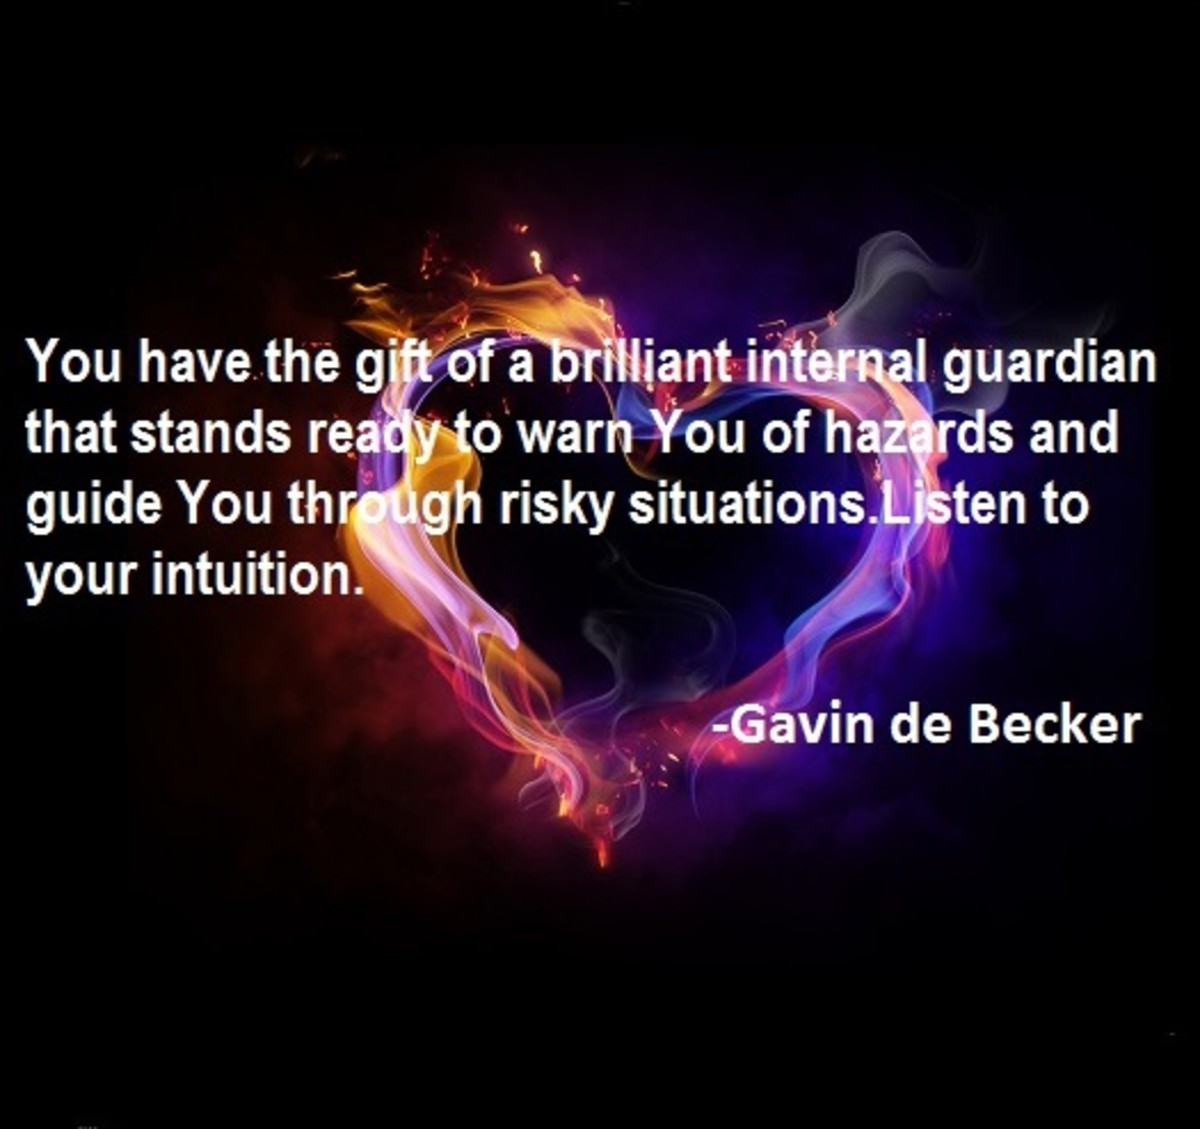 Gavin de Becker quote